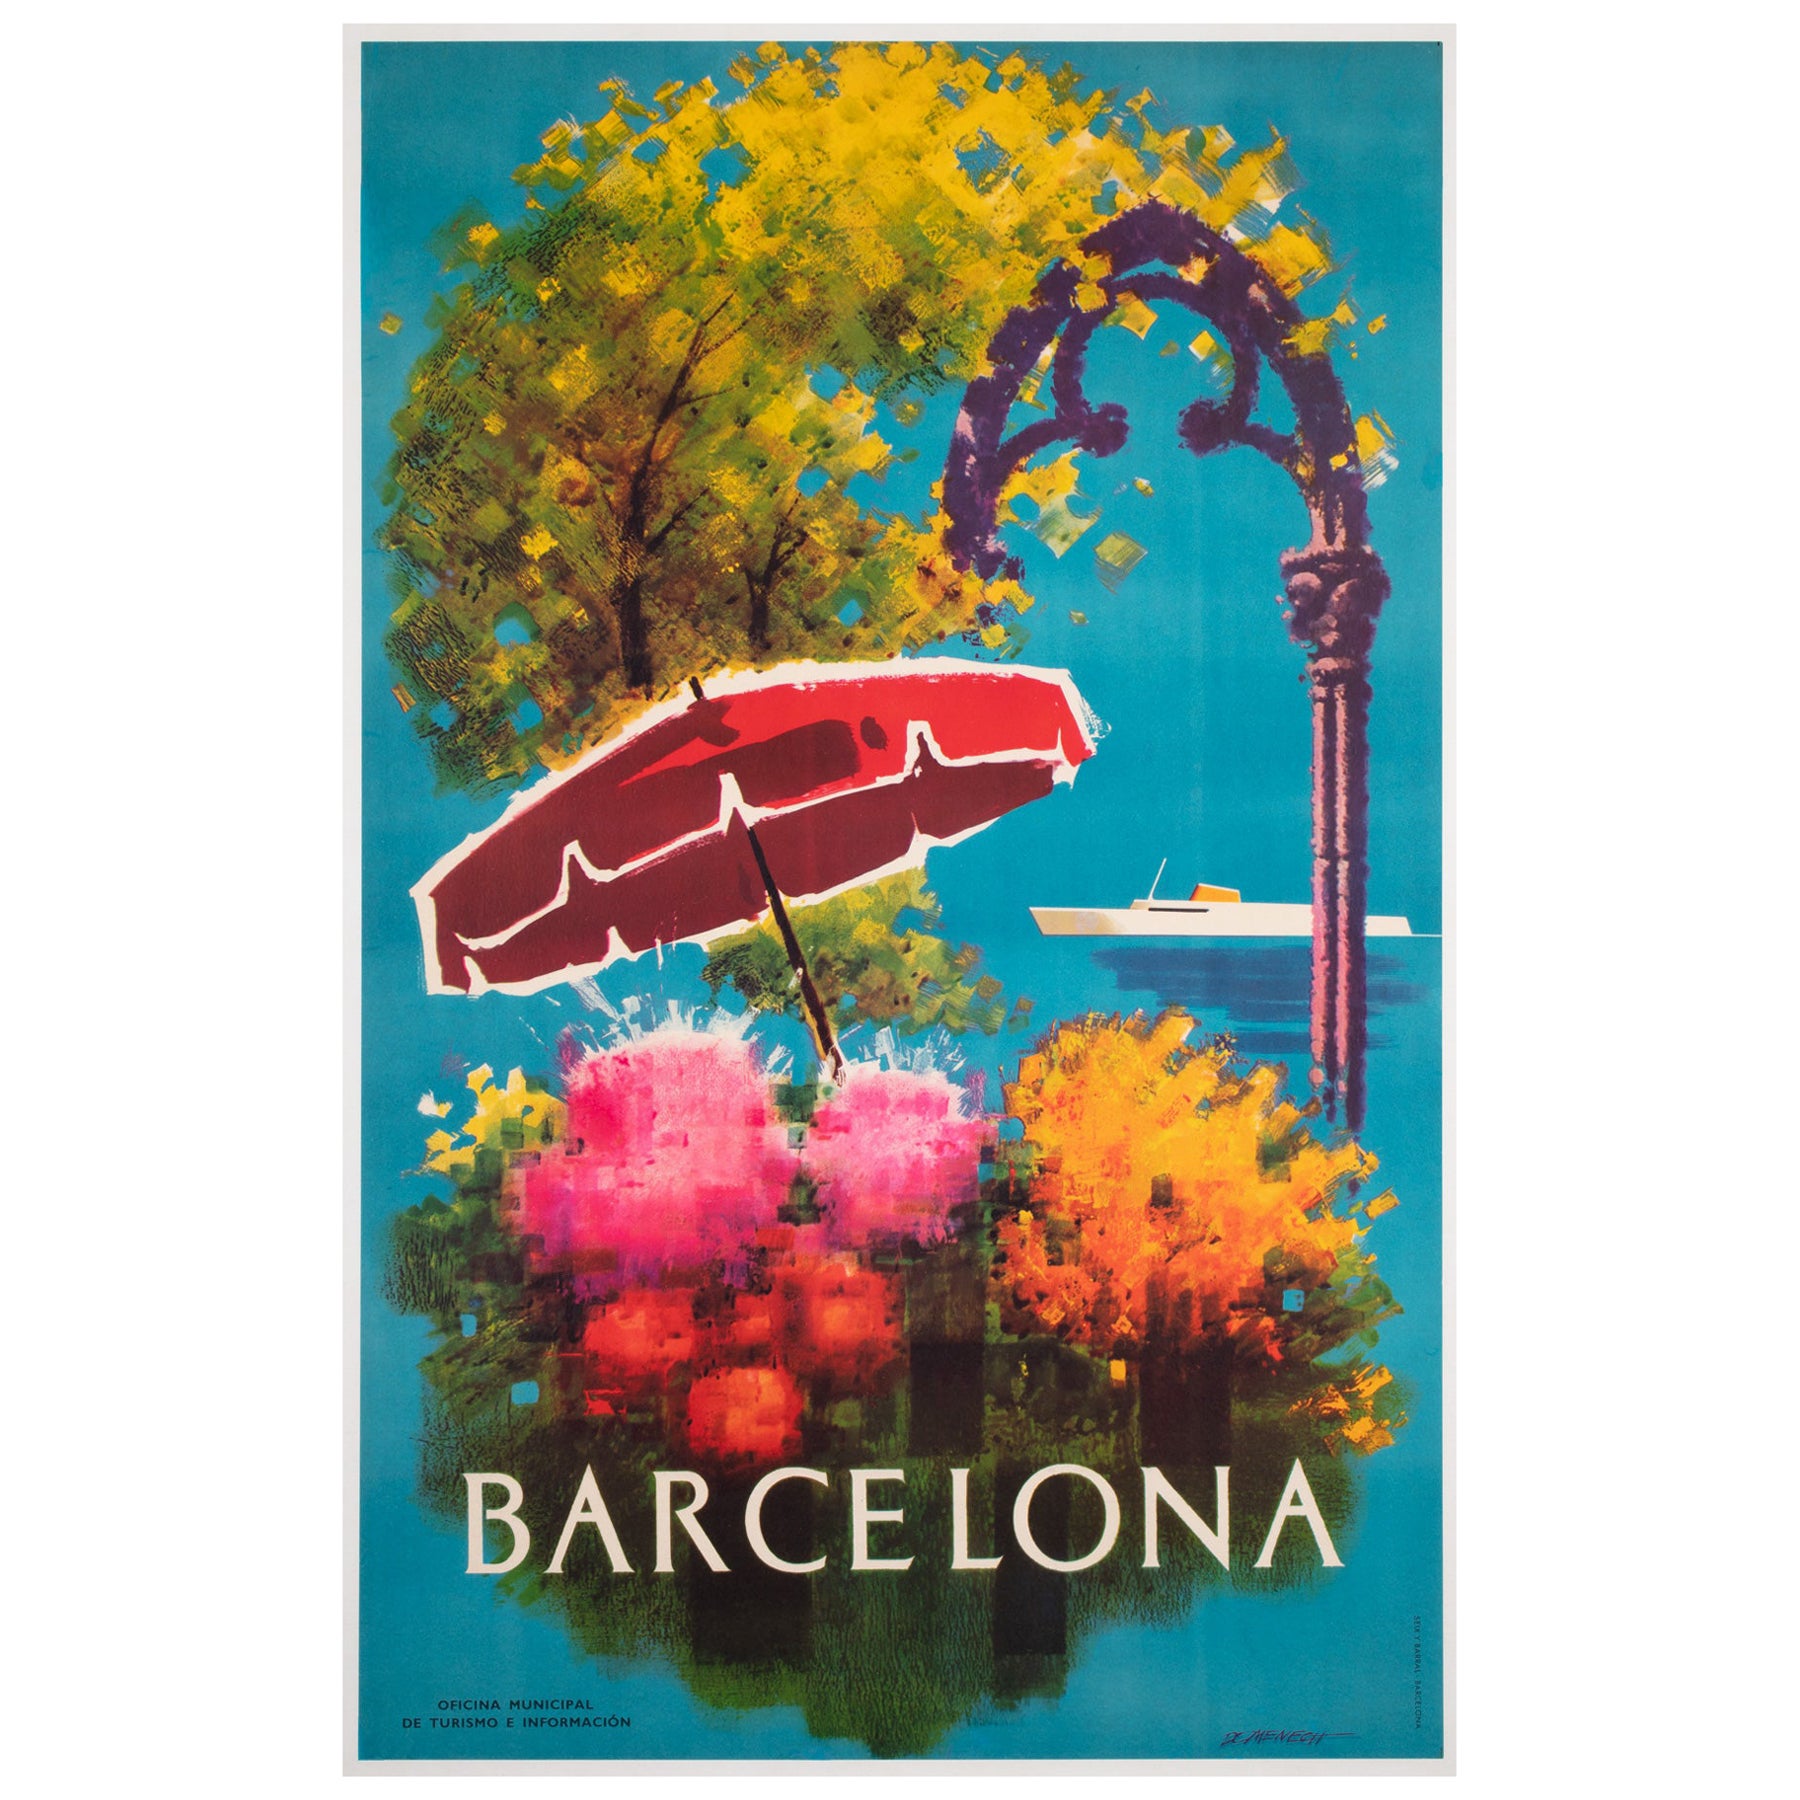 Barcelona 1950s Spanish Travel Advertising Poster, Flowers, Ship